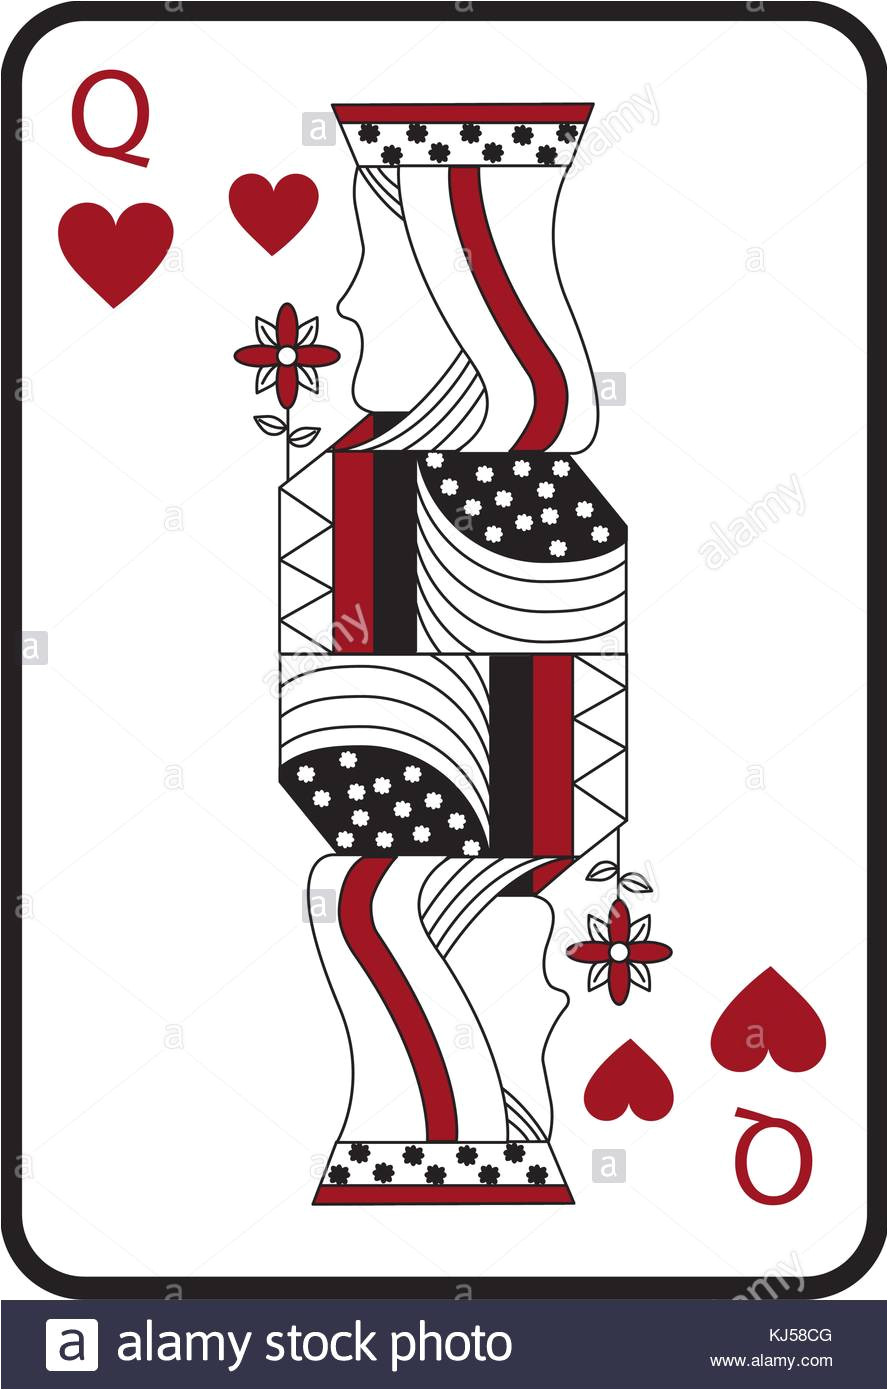 konigin der herzen franzosische spielkarten zugehorige symbol bild kj58cg jpg